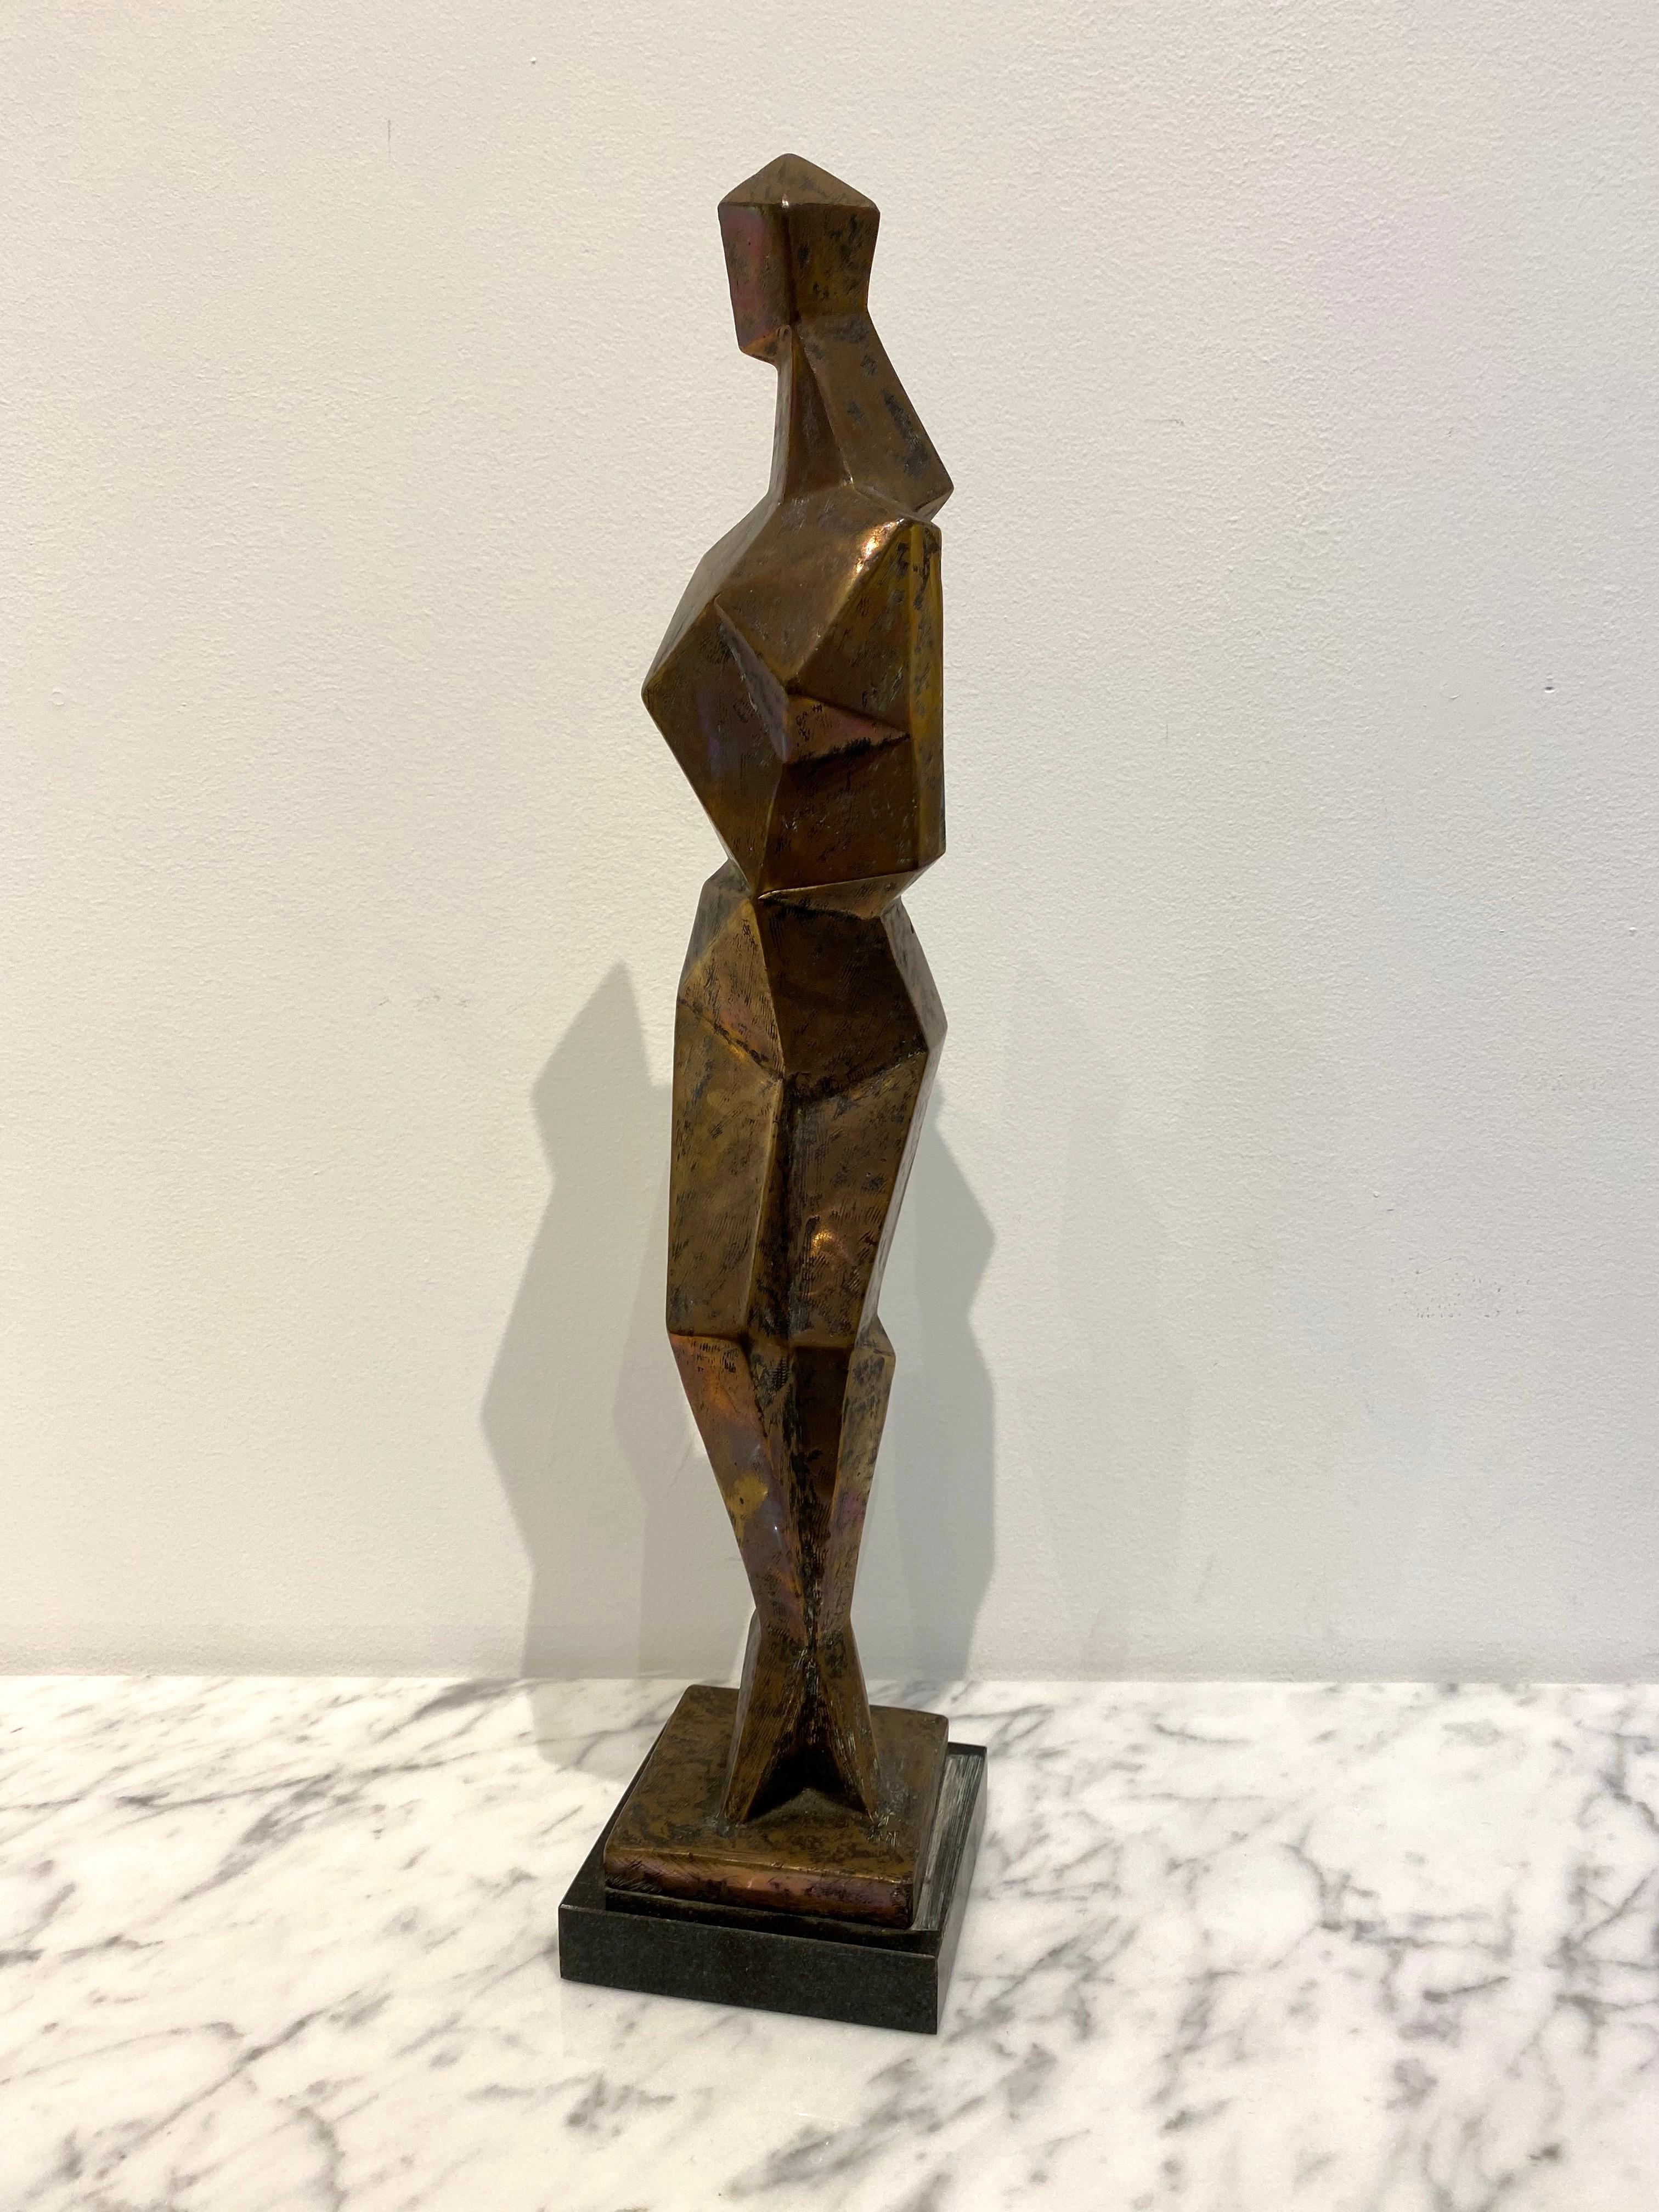 Galinea – Sculpture von Jim Ritchie